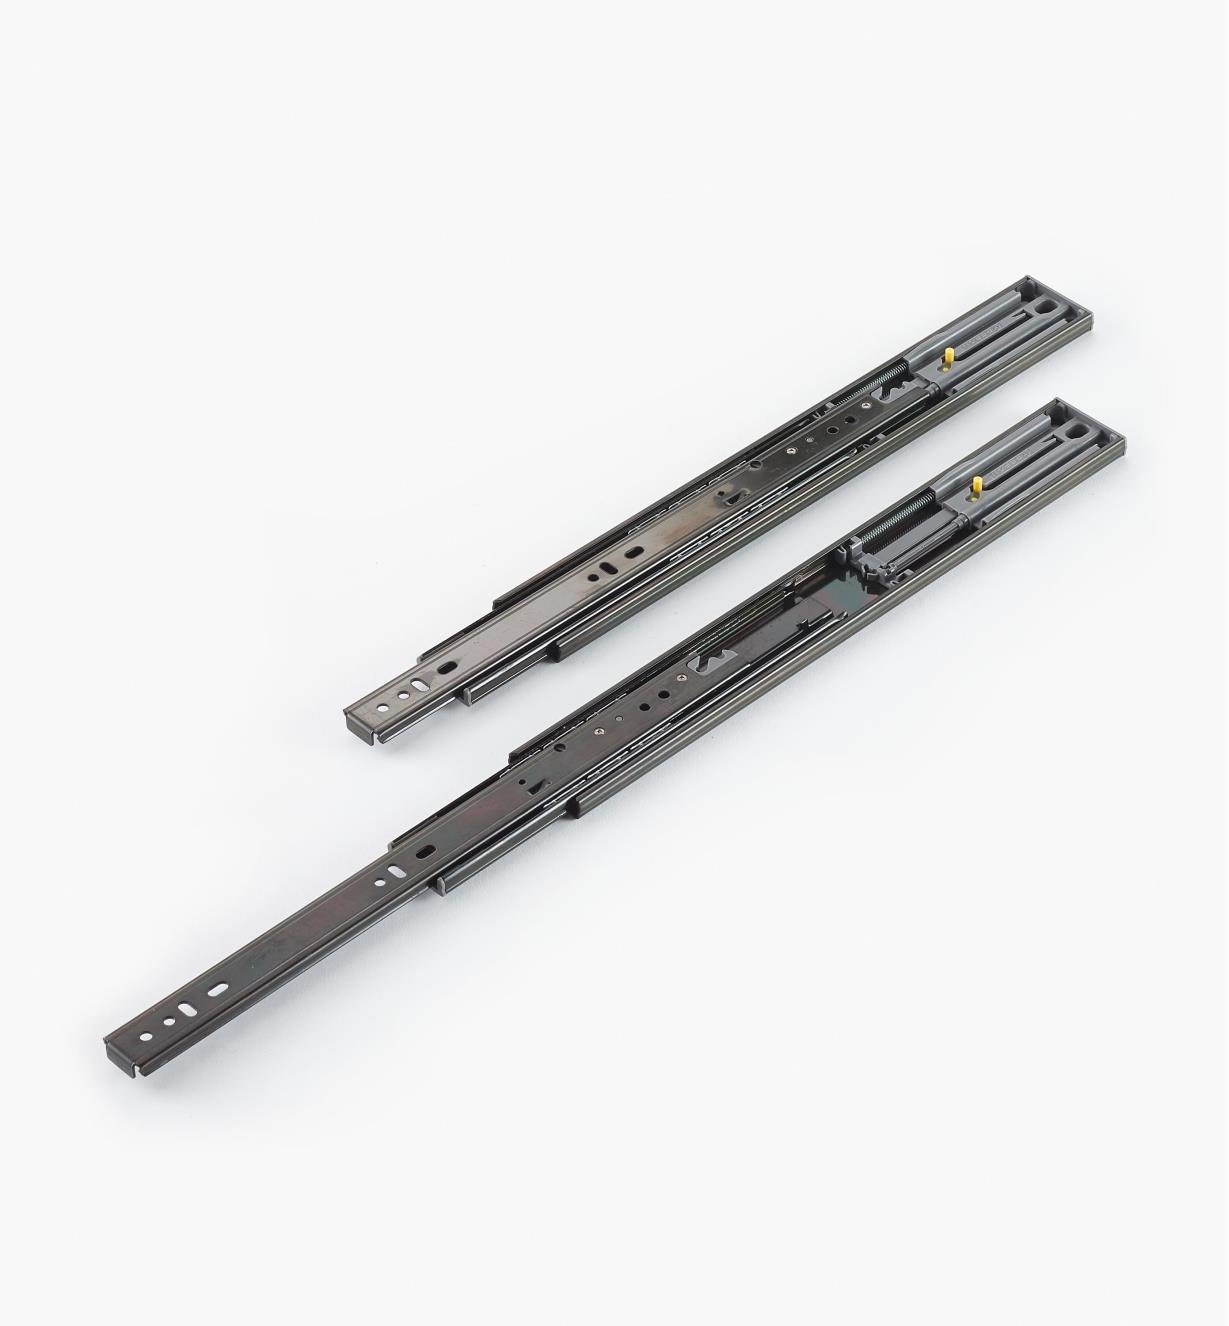 02K5235 - Black Finish, 350mm (14"), Soft-Closing Regular Extension Slides, pr. (50 lb)